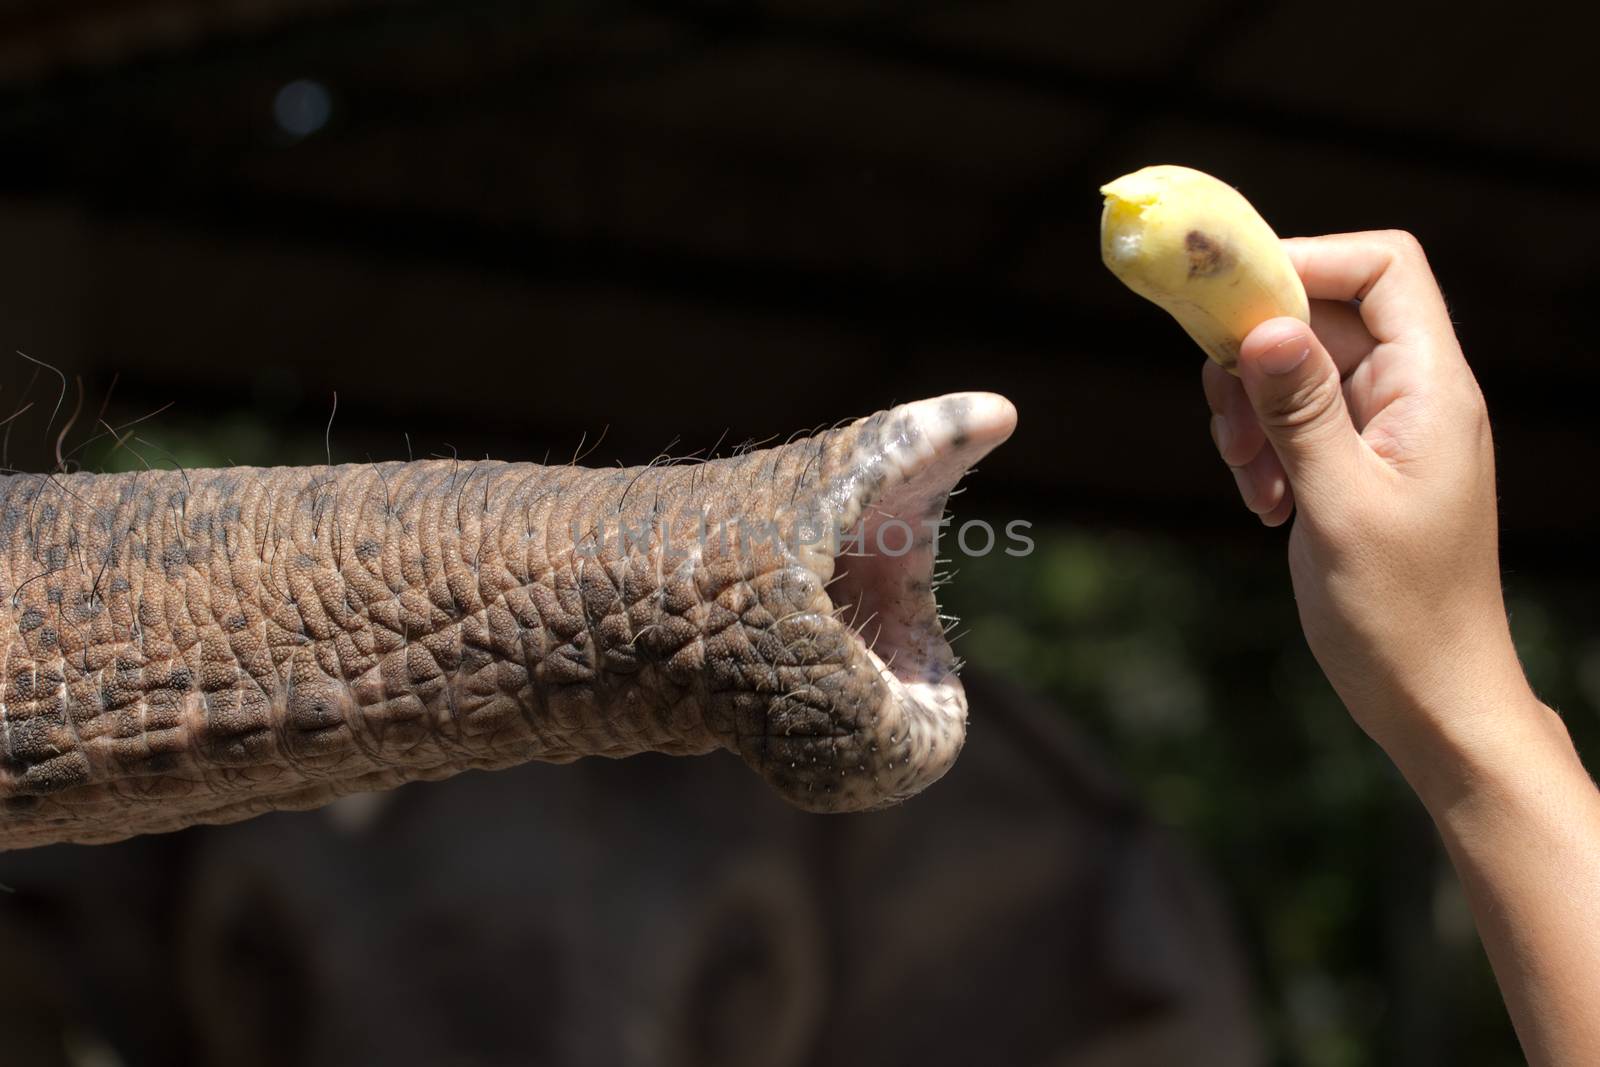 feeding an elephant by wyoosumran